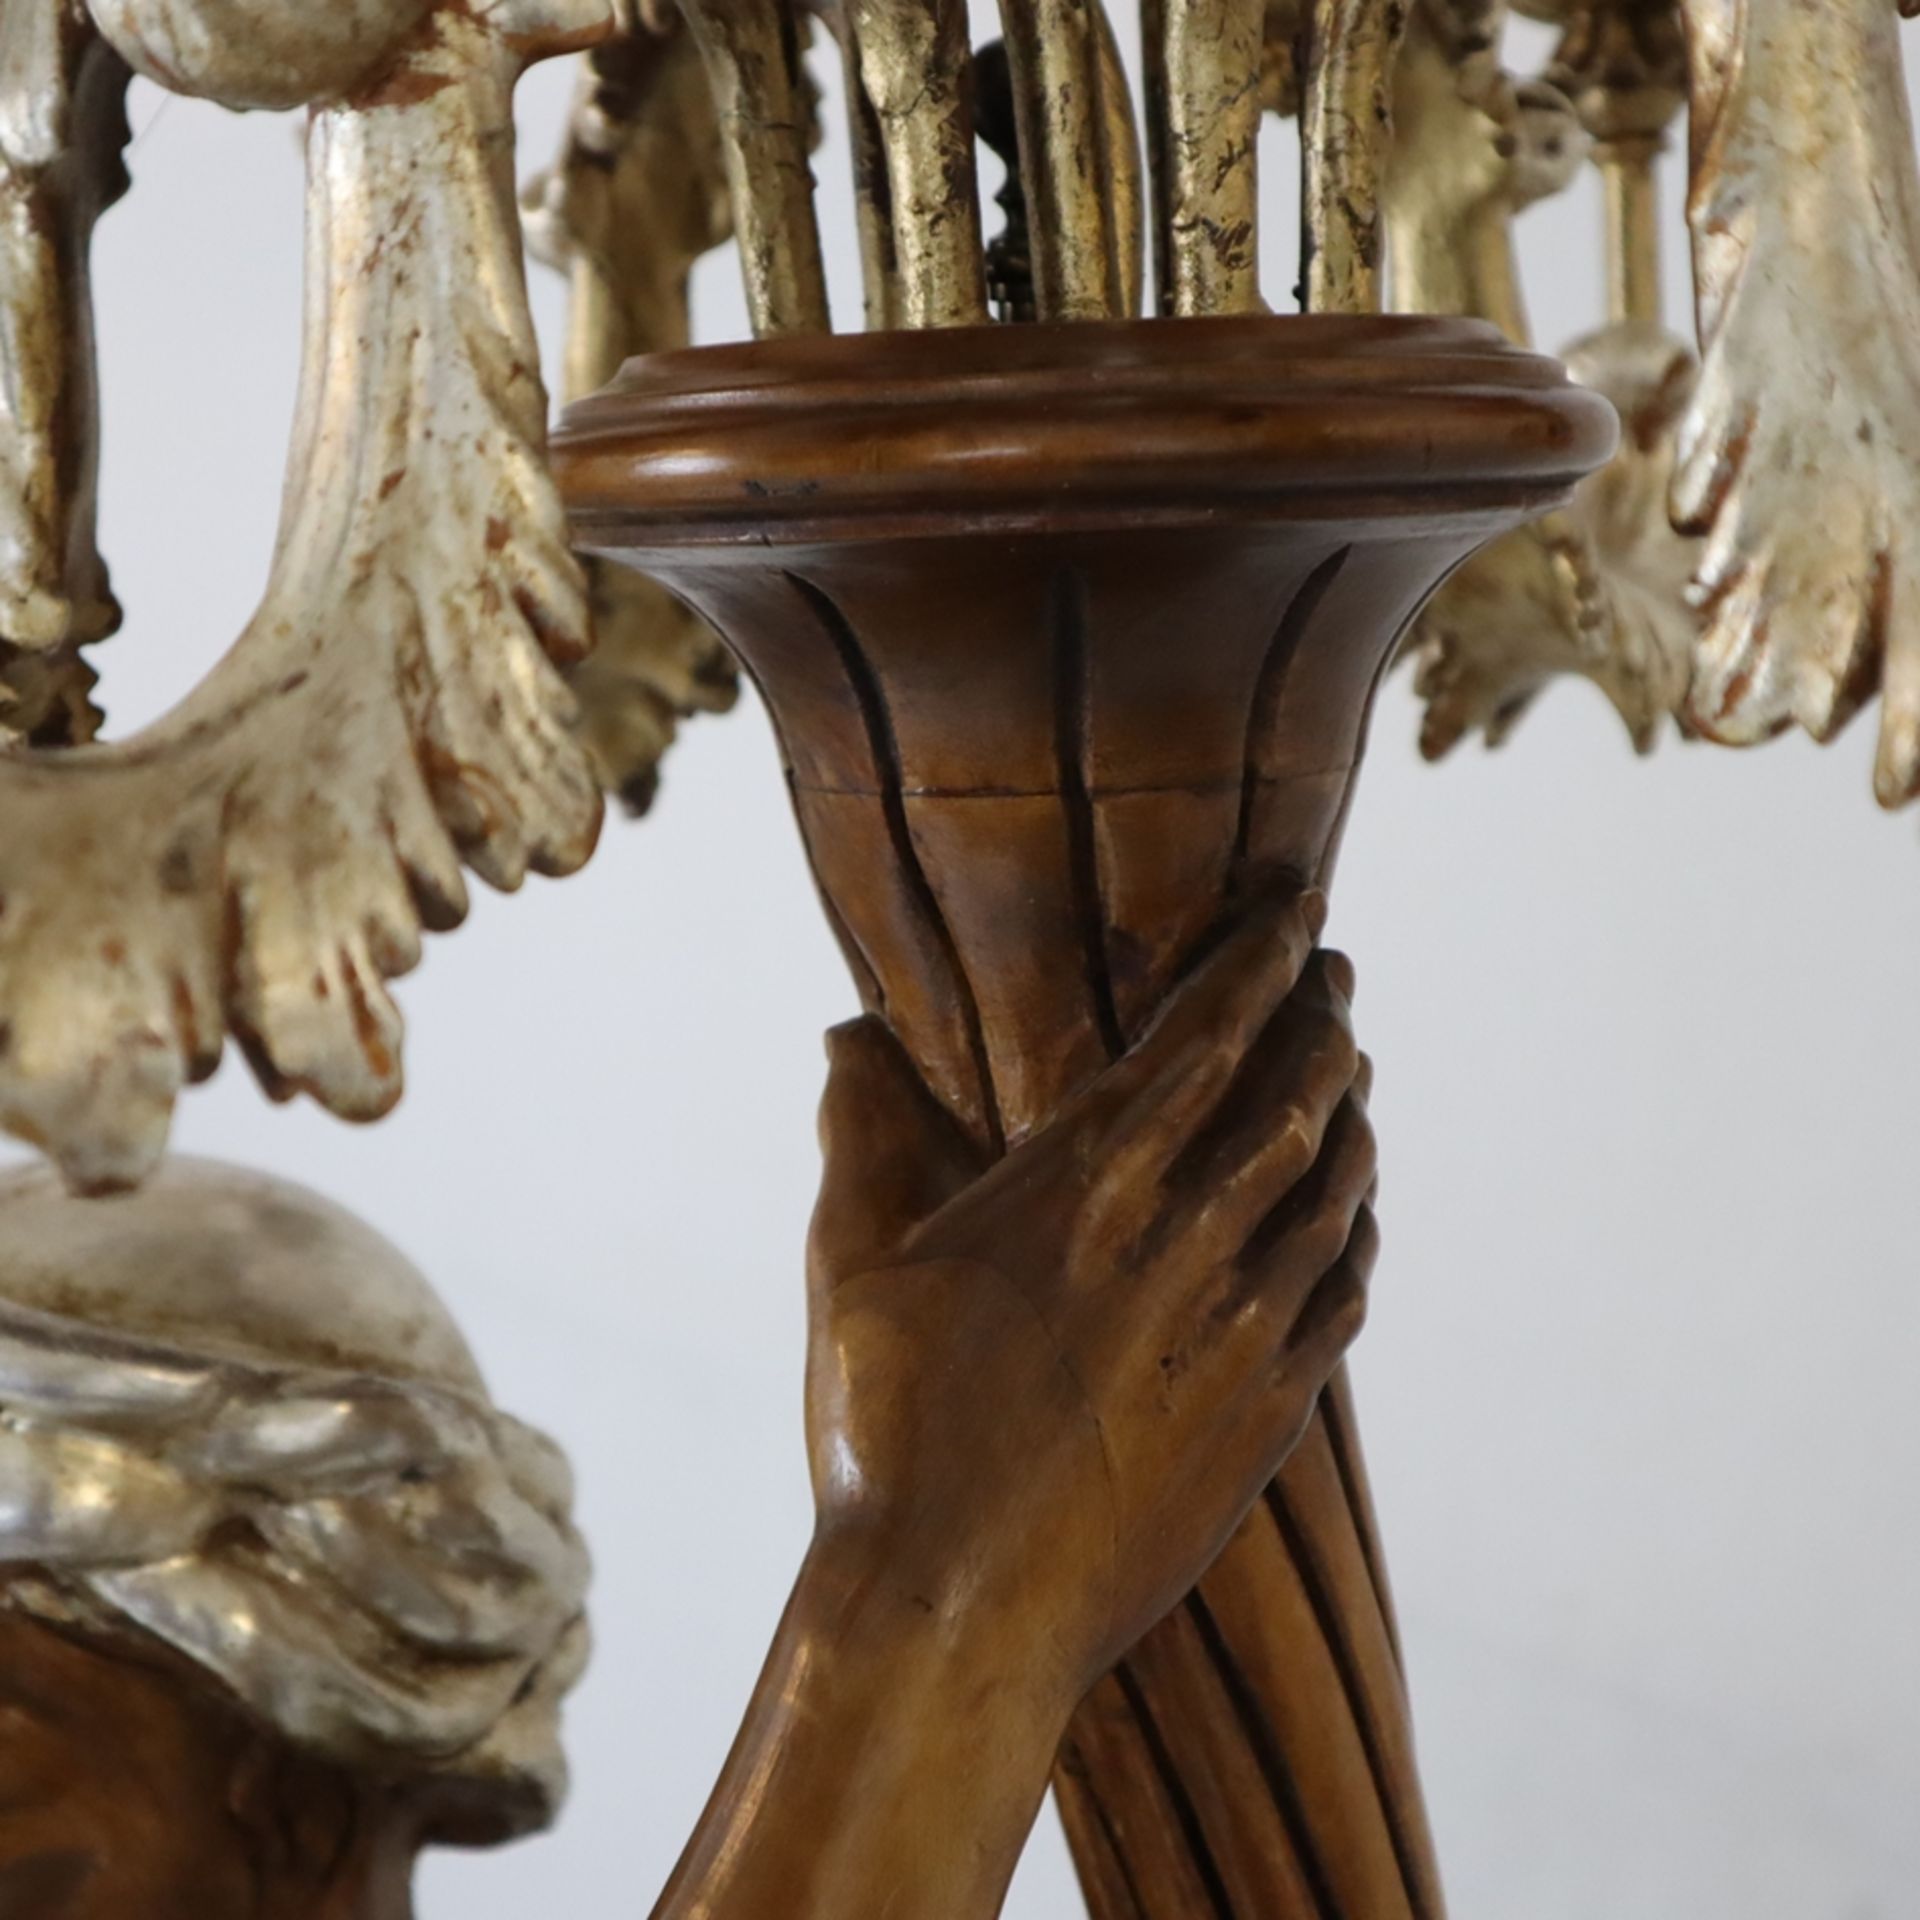 Großer figürlicher Leuchter - 20.Jh., venezianischer Barock-Stil, Holz, geschnitzt, gebeizt, teils - Image 5 of 13